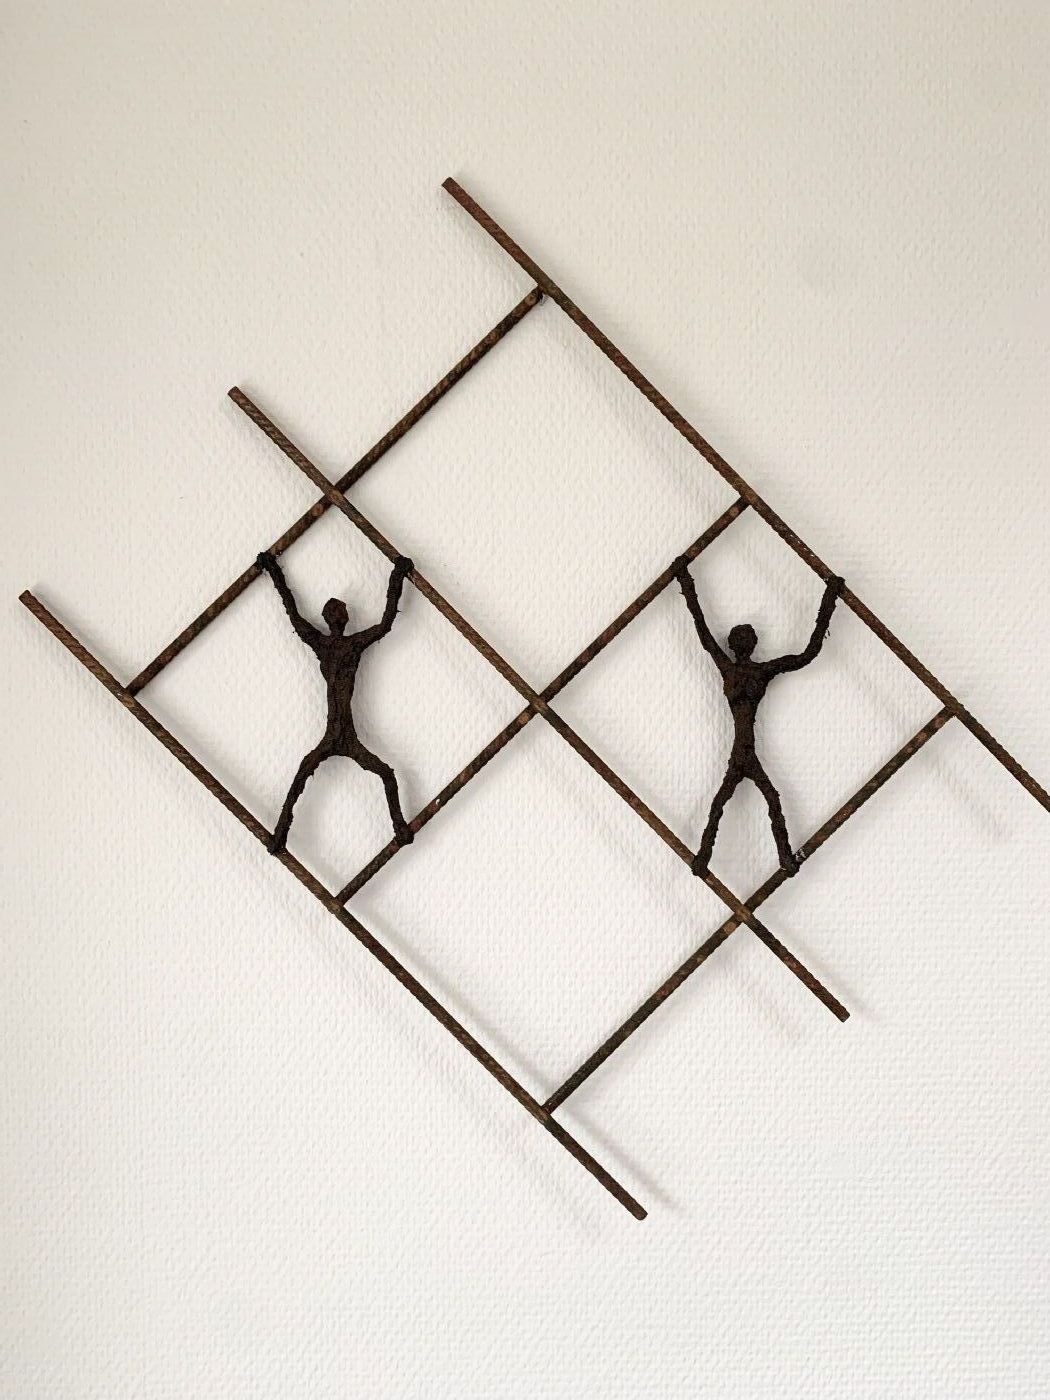 Balancegang by Bjarne Geertsen | skulptur